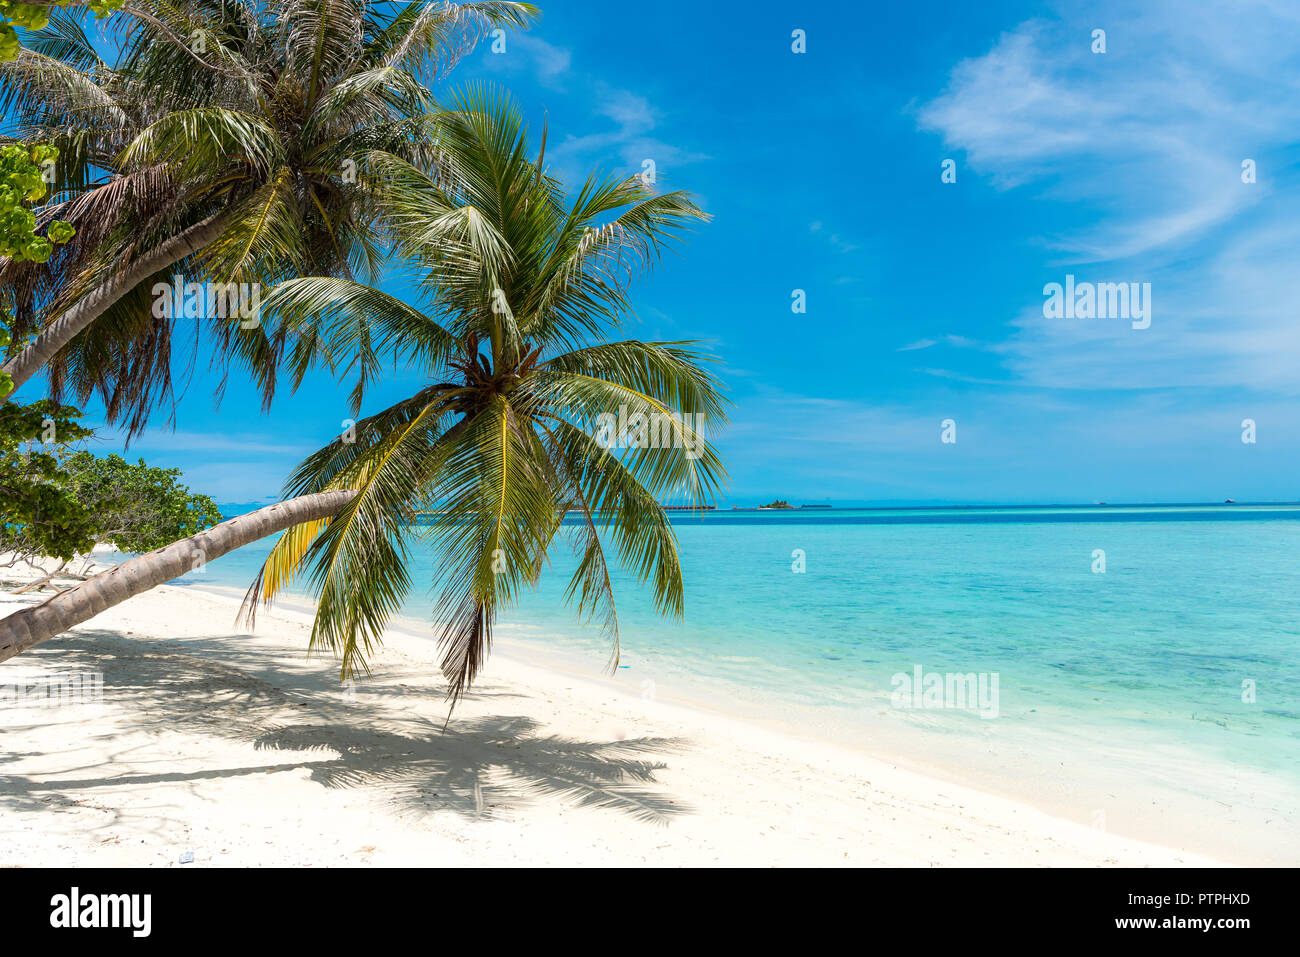 Maldive beach, Palm tree albero di cocco sulla spiaggia di sabbia bianca delle Maldive Tropical Paradise Island, la spiaggia più bella del mondo Foto Stock